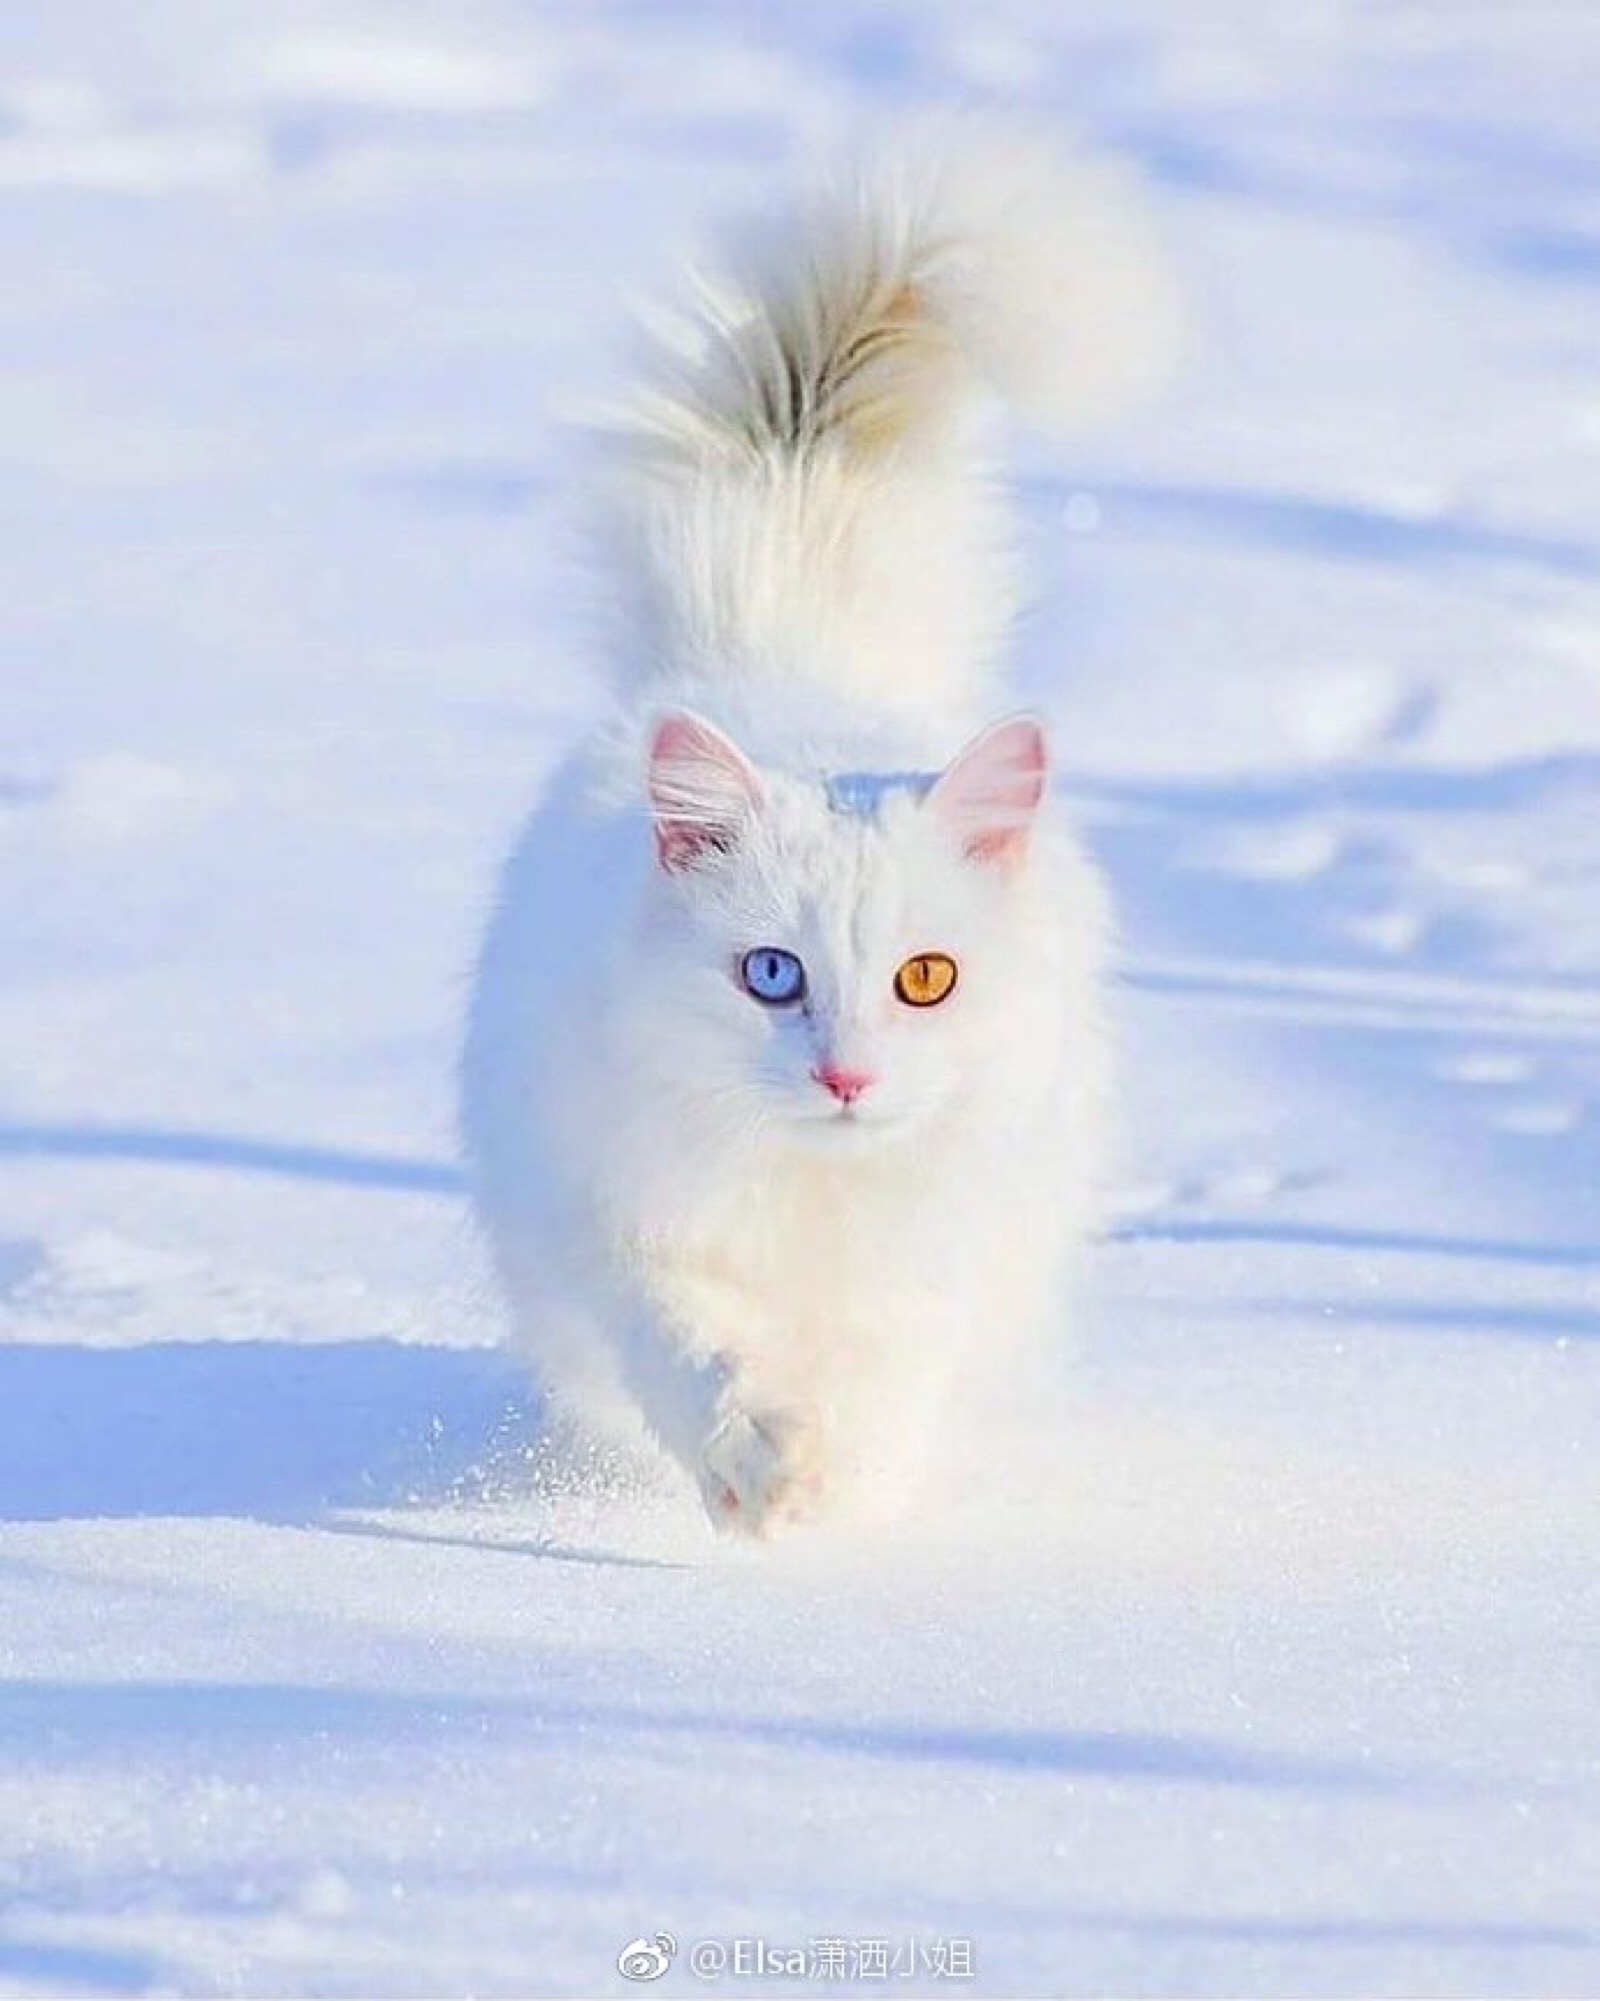 白猫 异瞳 猫咪 萌宠 可爱喵星人 白色 雪地